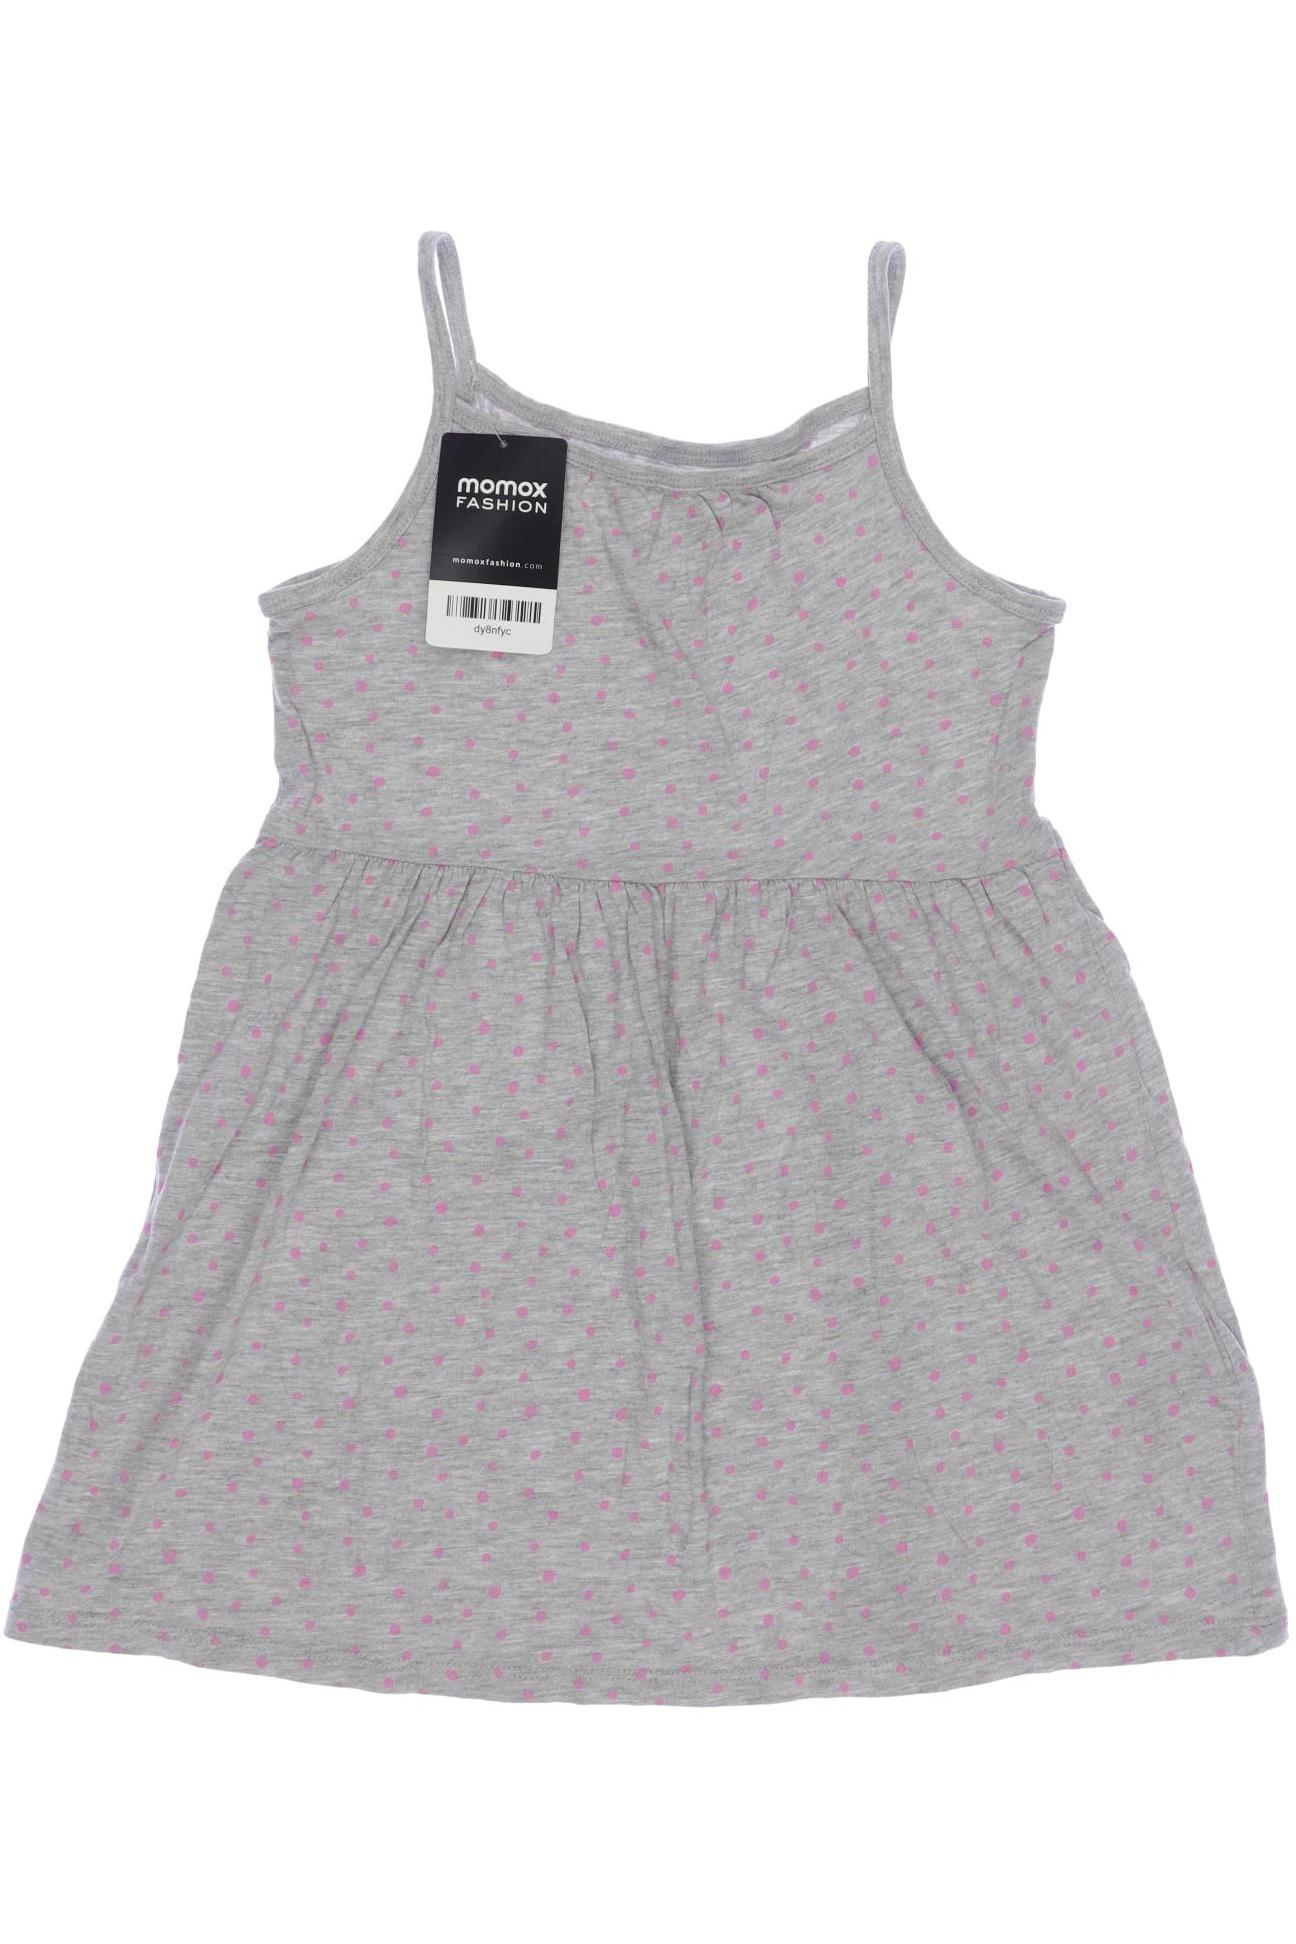 H&M Mädchen Kleid, grau von H&M